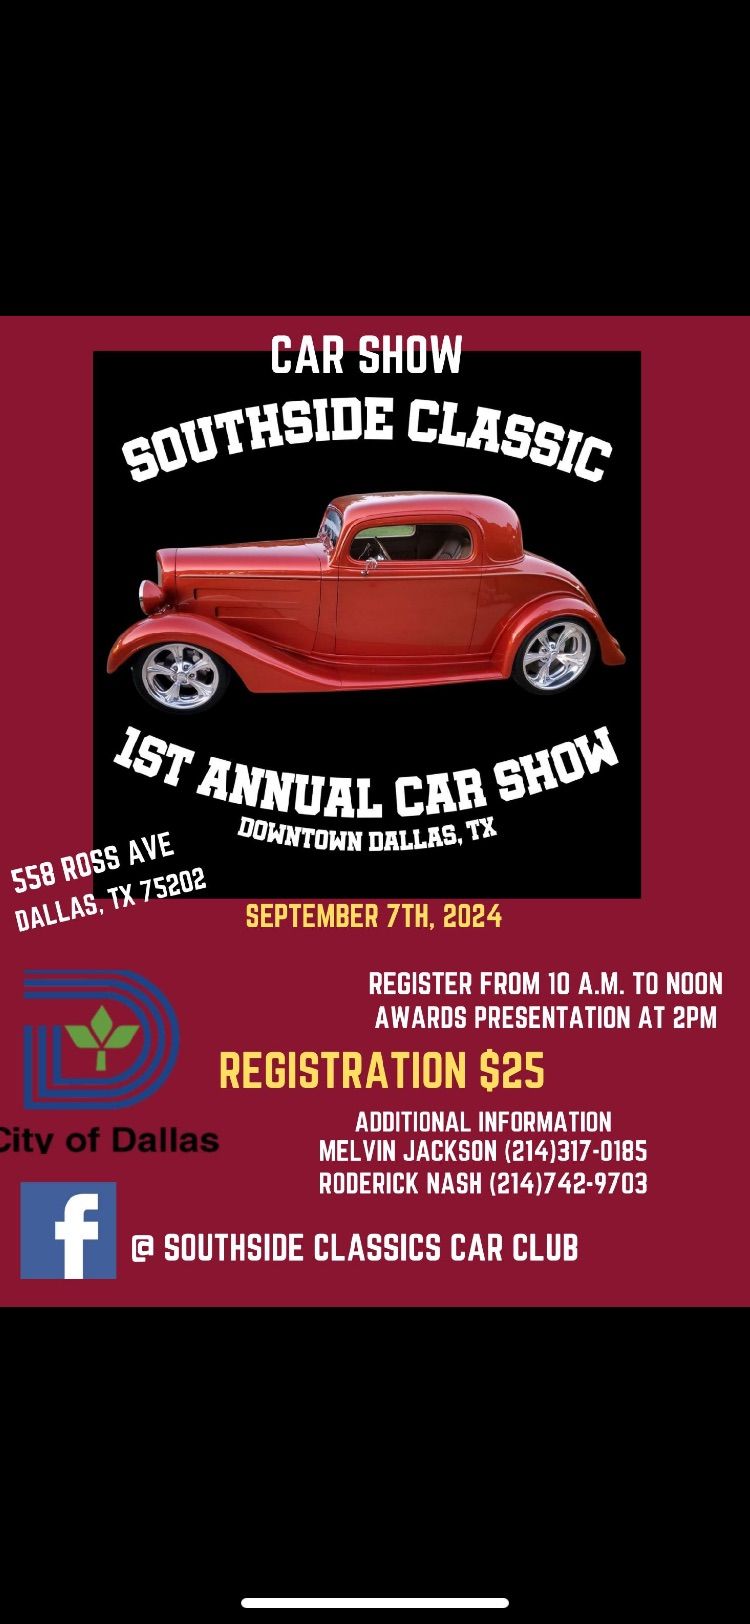 First Annual SouthSide Classics Car Club Car Show!